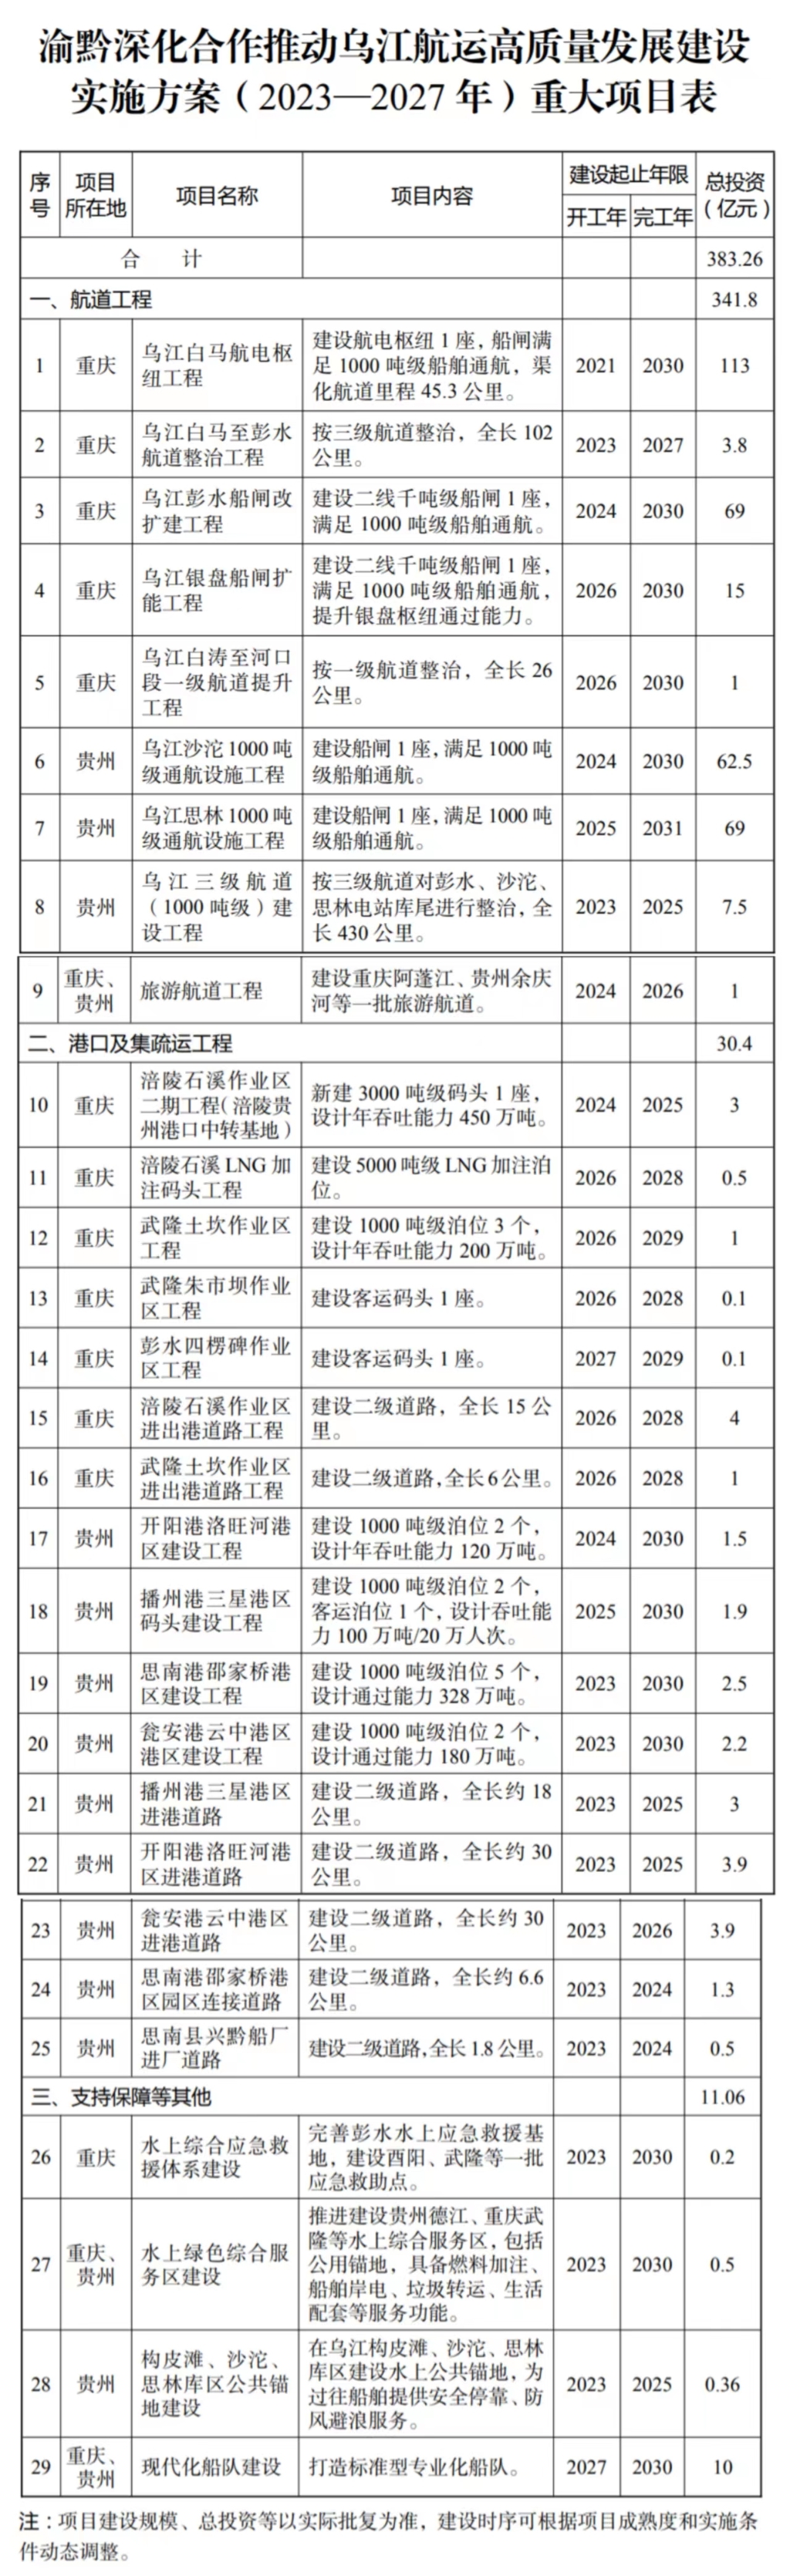 重大项目表。重庆市人民政府官网截图